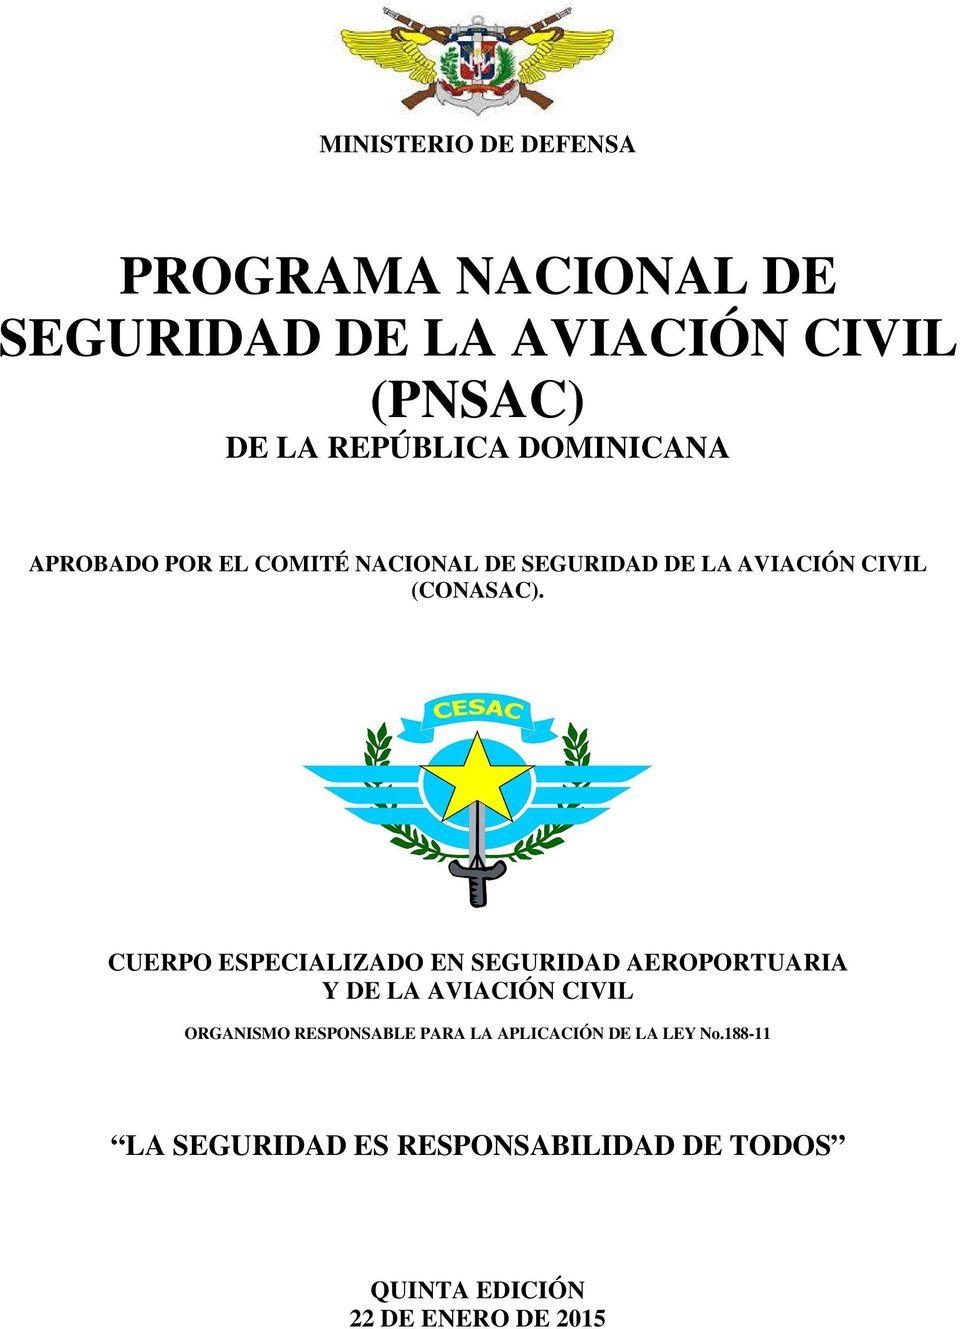 Programa Nacional de Seguridad para la Aviación Civil